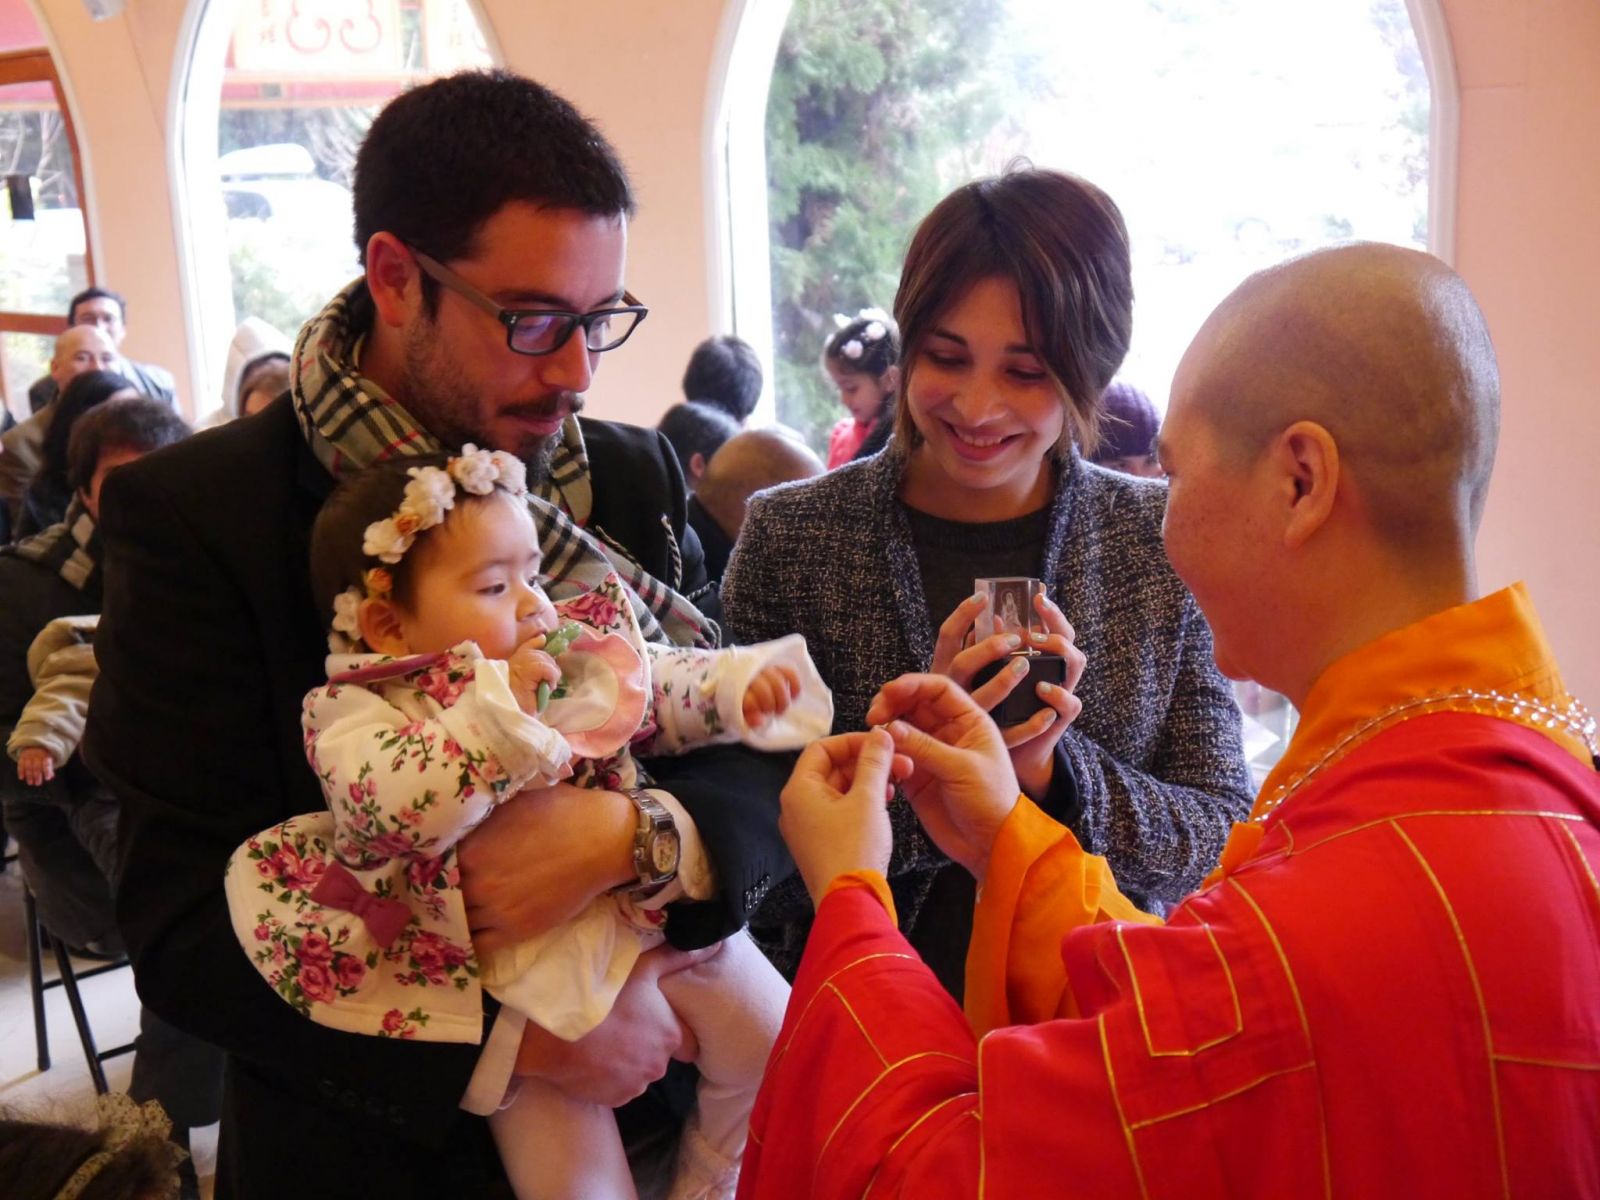 Phật giáo Phật Quang Sơn trong cộng đồng người dân Chile

